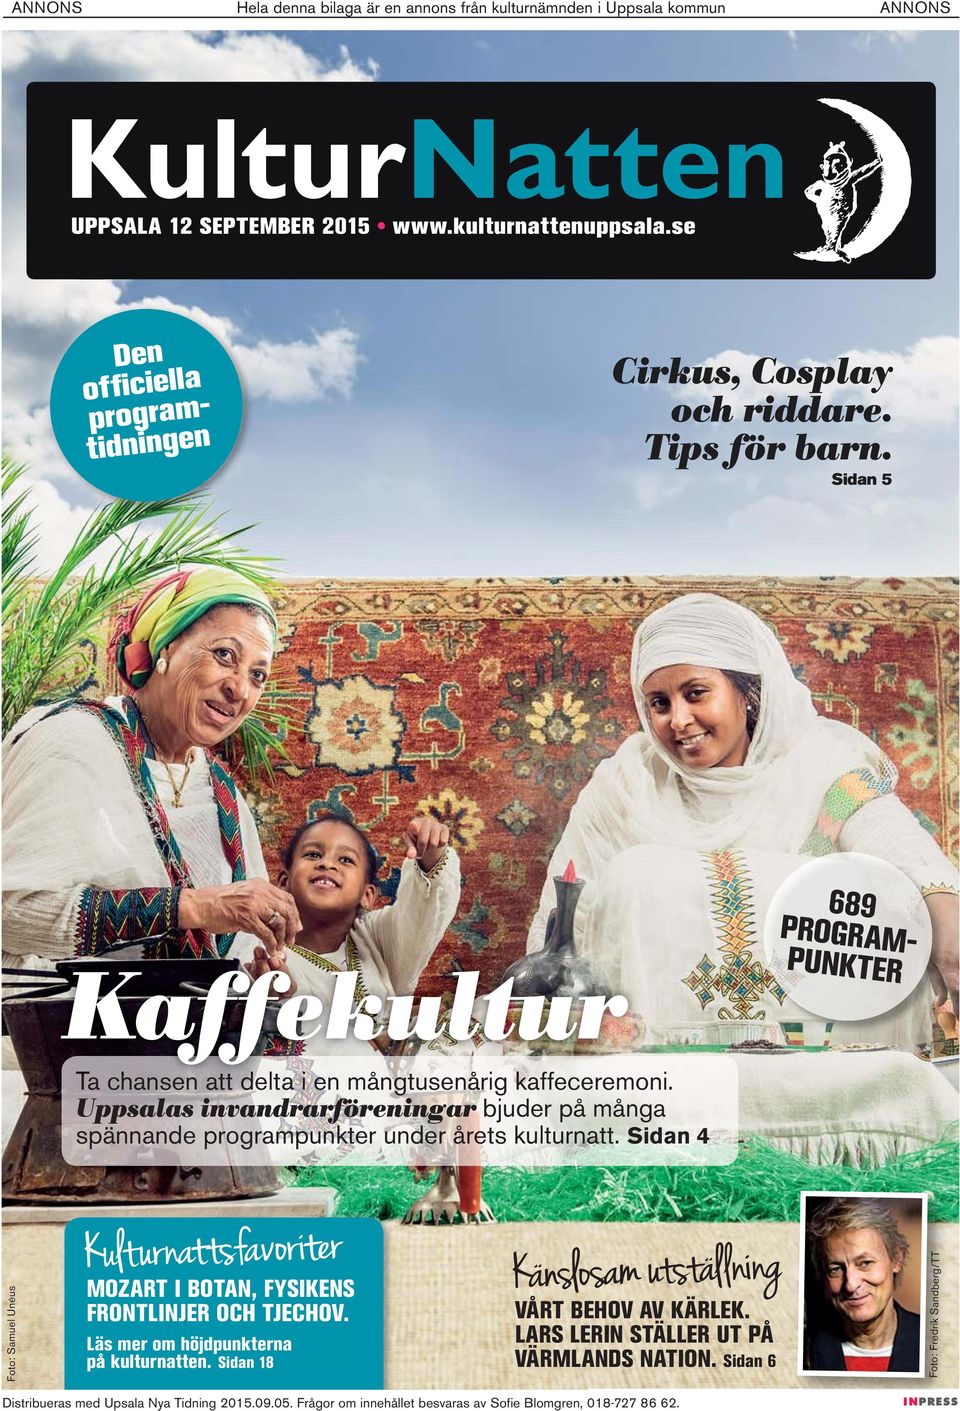 Uppsalas invandrarföreningar bjuder på många spännande programpunkter under årets kulturnatt.